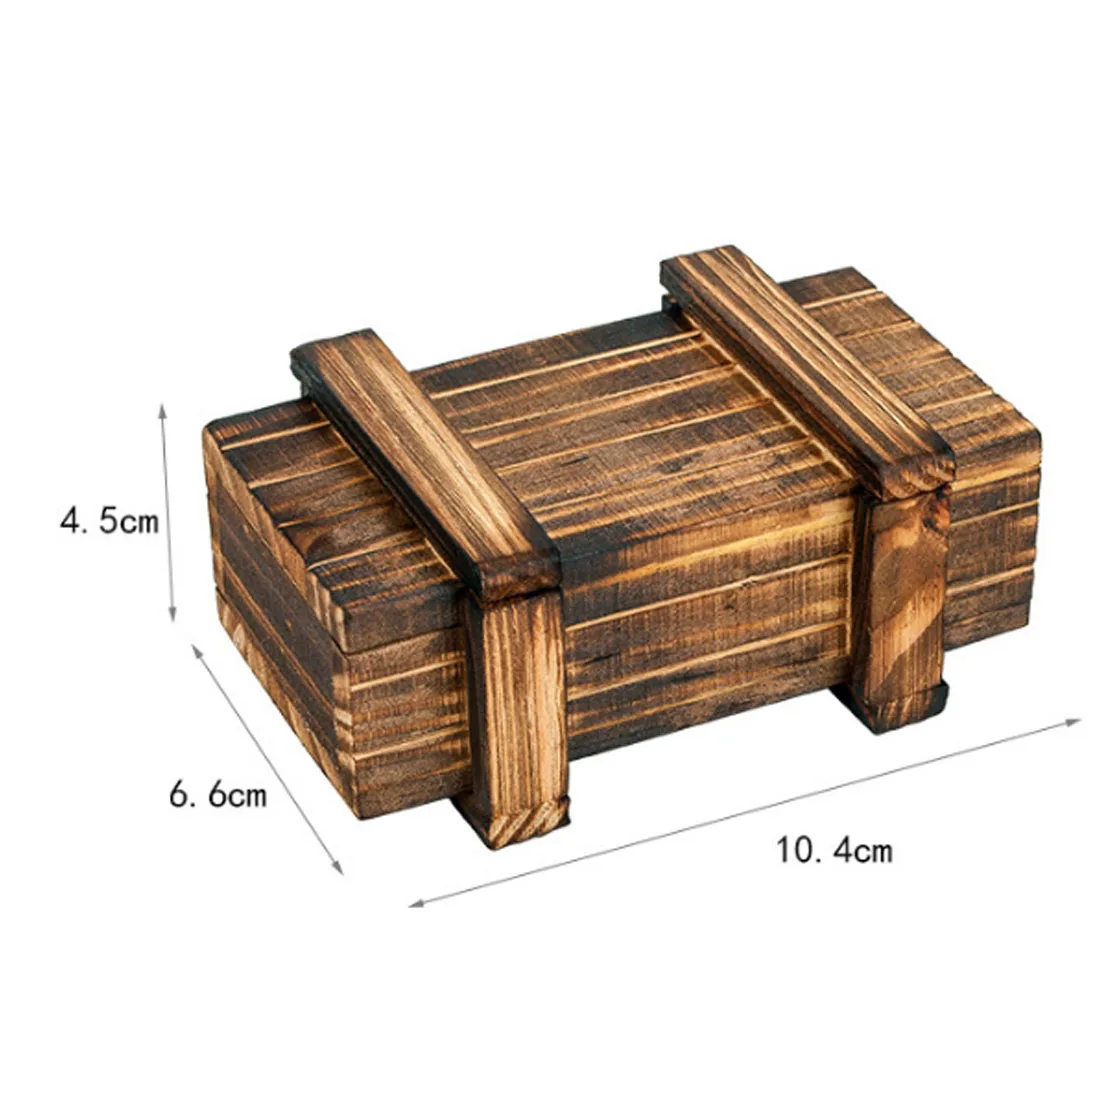 Surwish Magic Mystery Box Puzzle деревянная коробка для взрослых скрытие ювелирных изделий наличные деньги